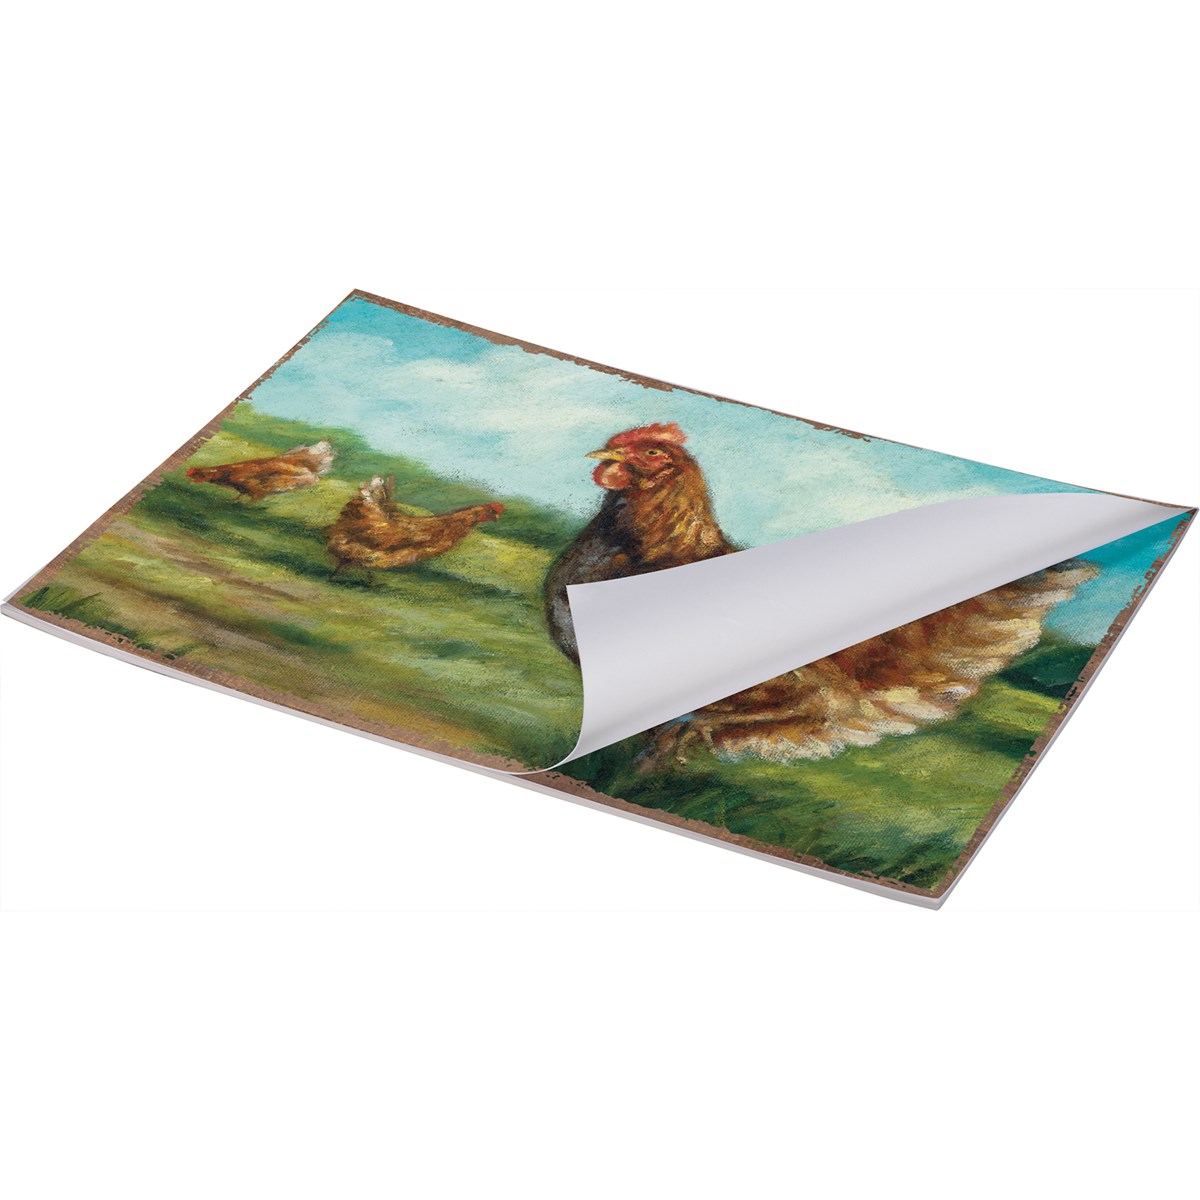 Paper Placemat Pad - Farm - 17.50" x 12" - Paper